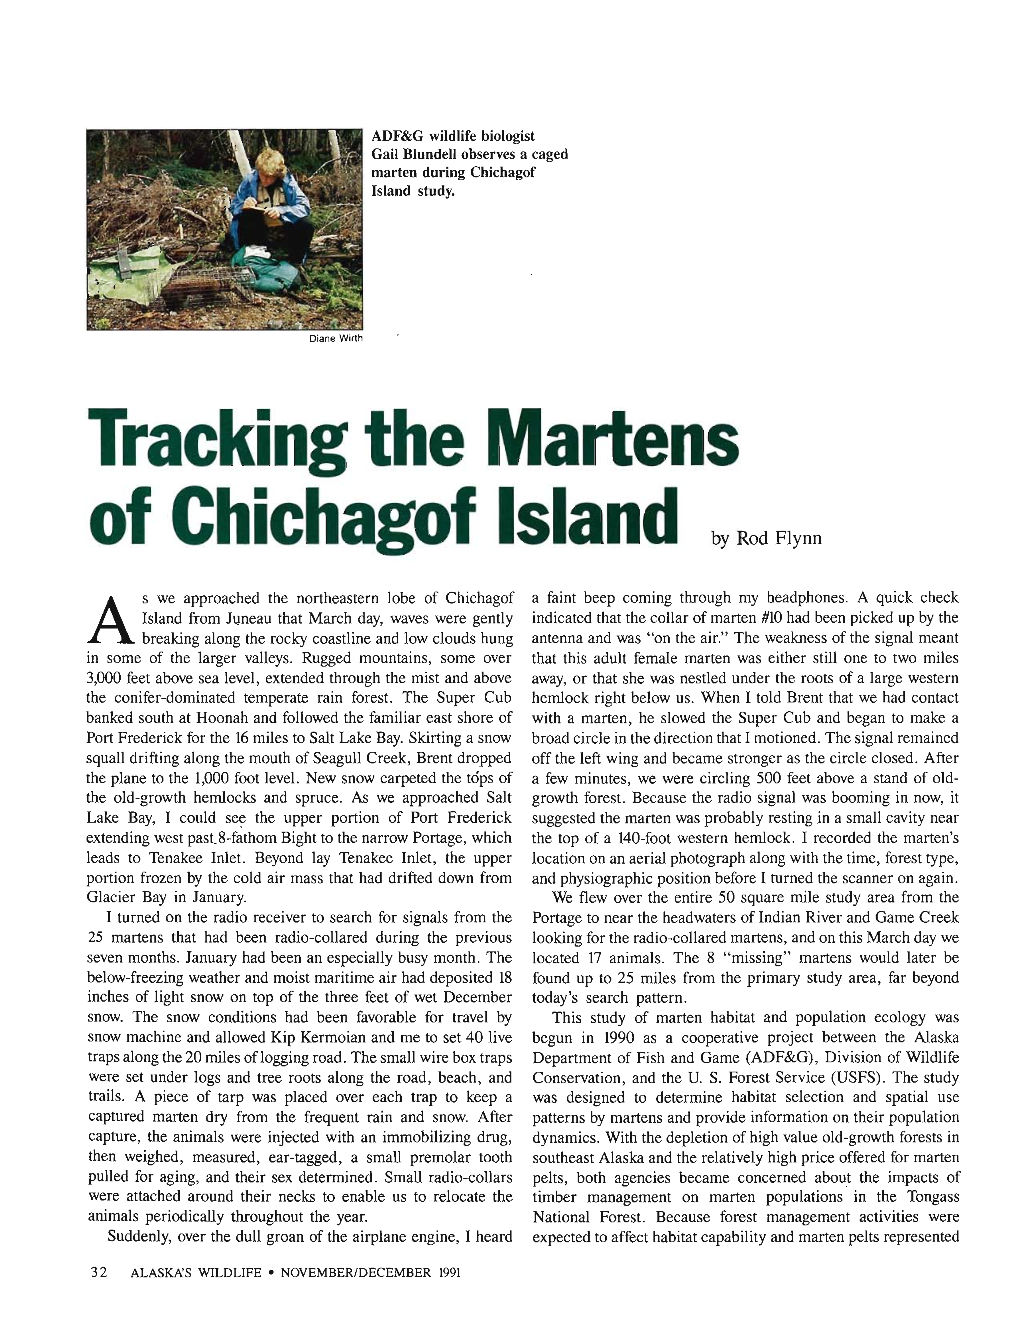 Tracking the Martens of Chichagof Island by Rod Flynn